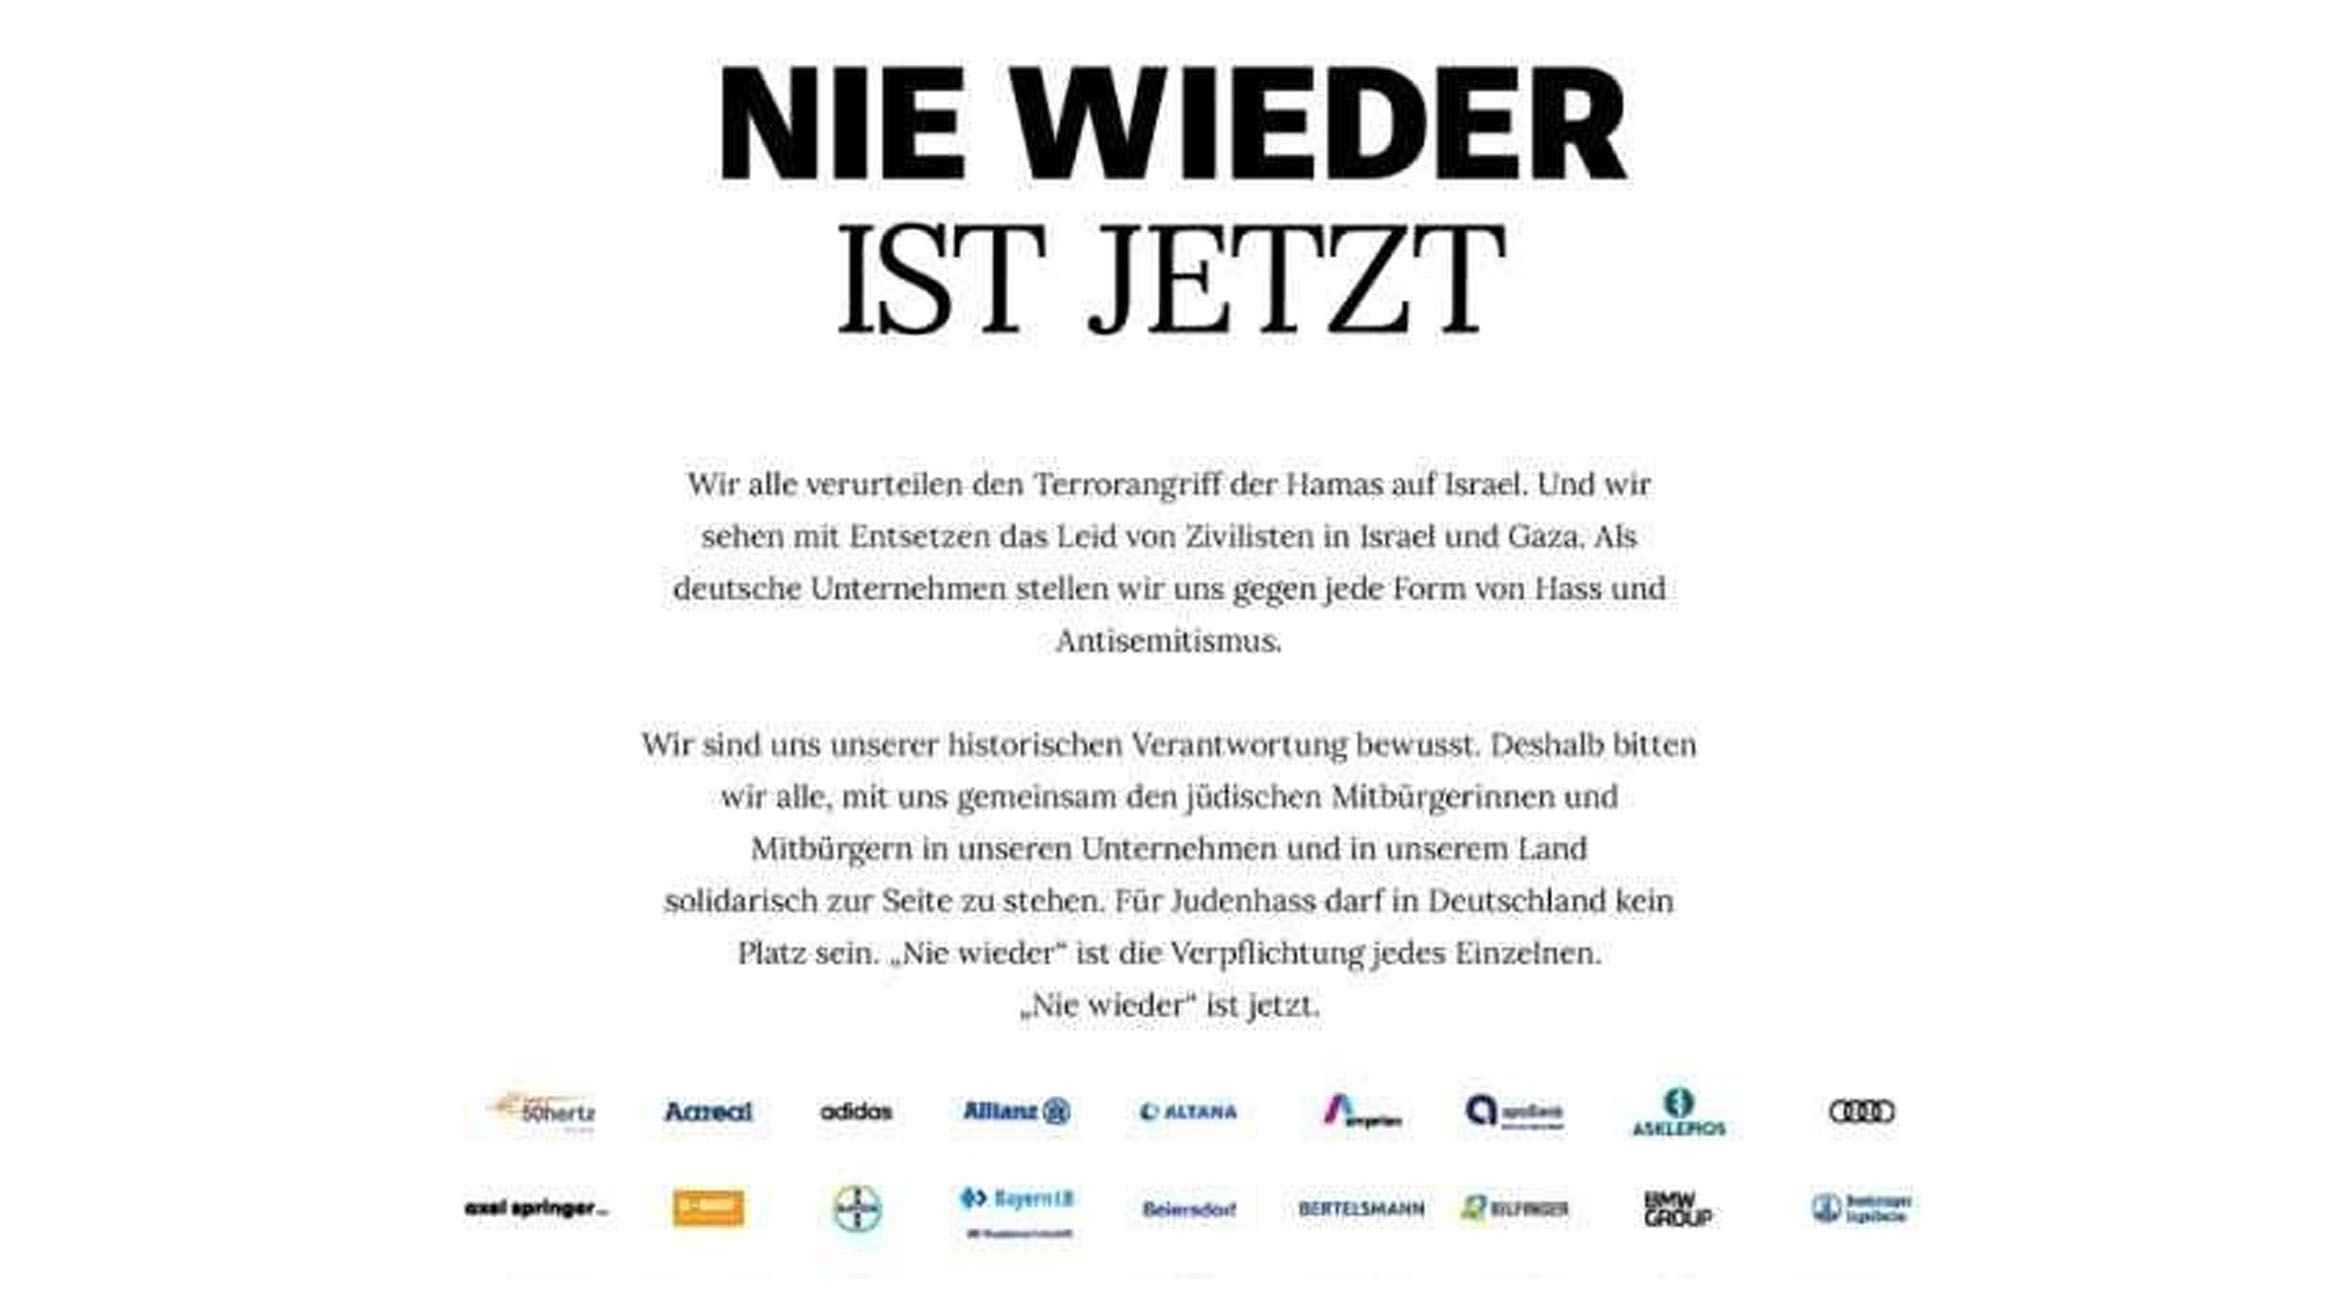 Großflächige Anzeigen in "Welt am Sonntag" gegen Judenhass in Deutschland